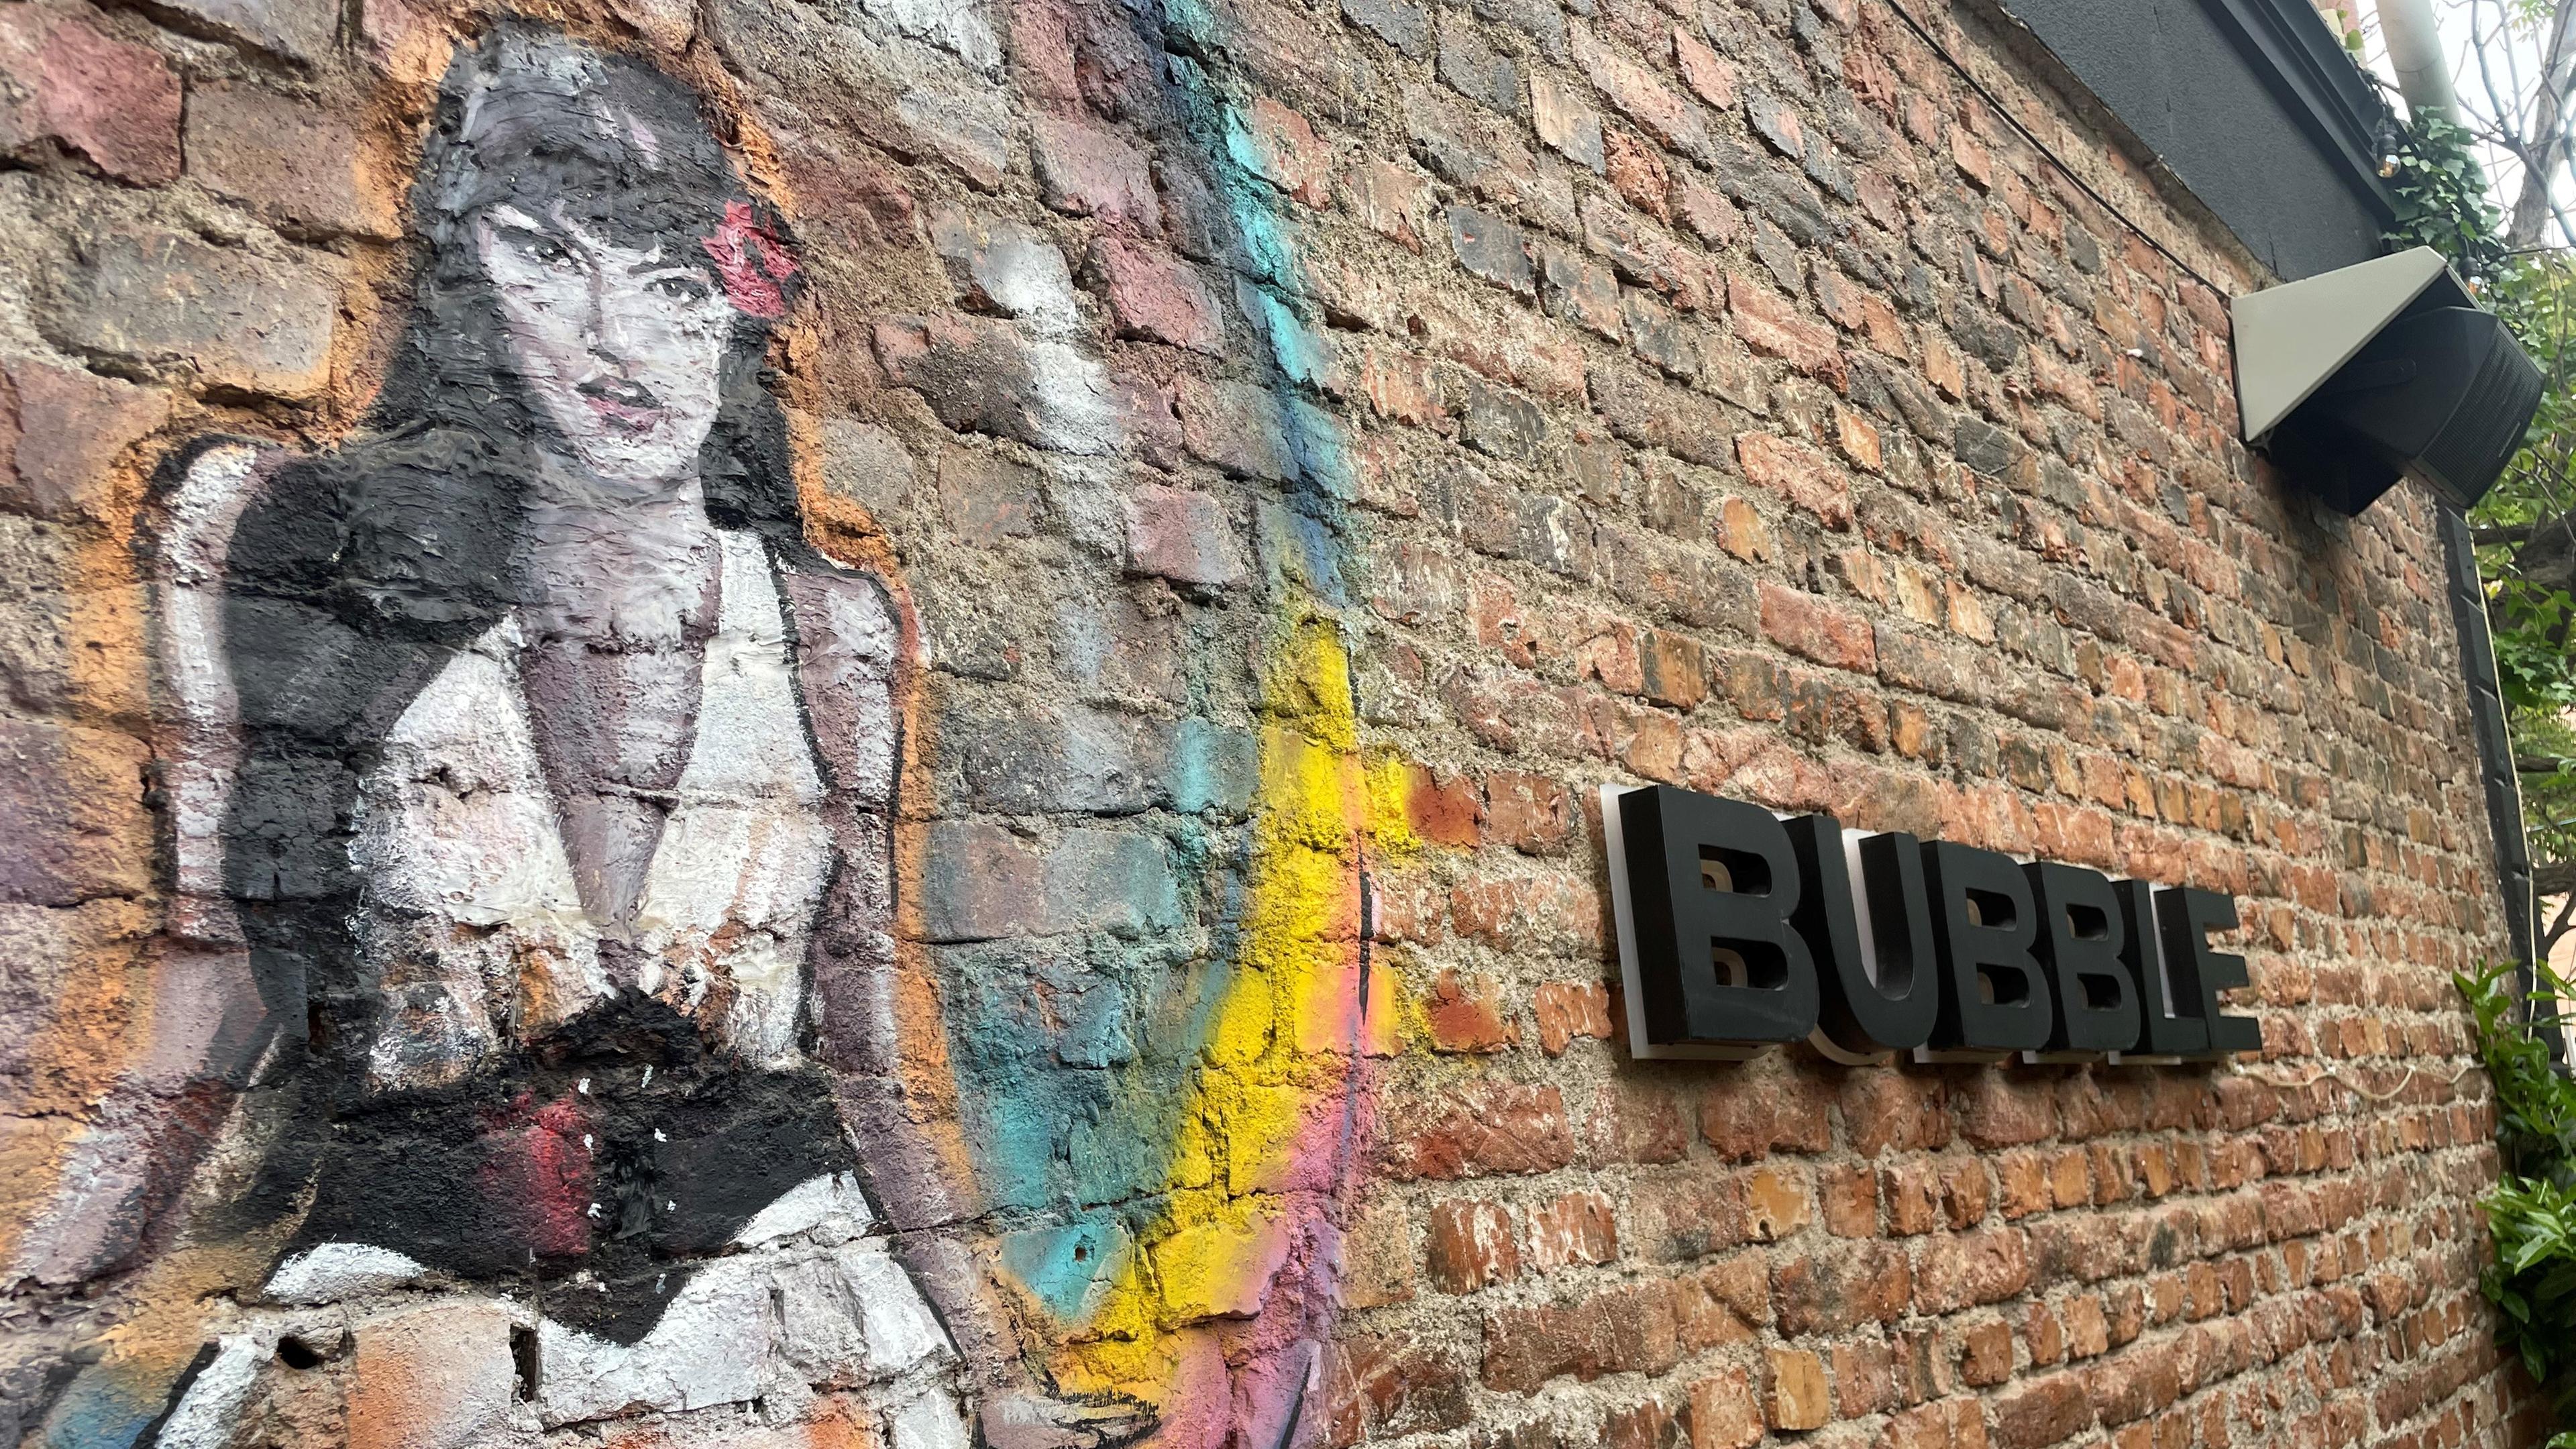 Man sieht den Schriftzug des "Bubble", der ersten queeren Bar in Pristina, Kosovo.